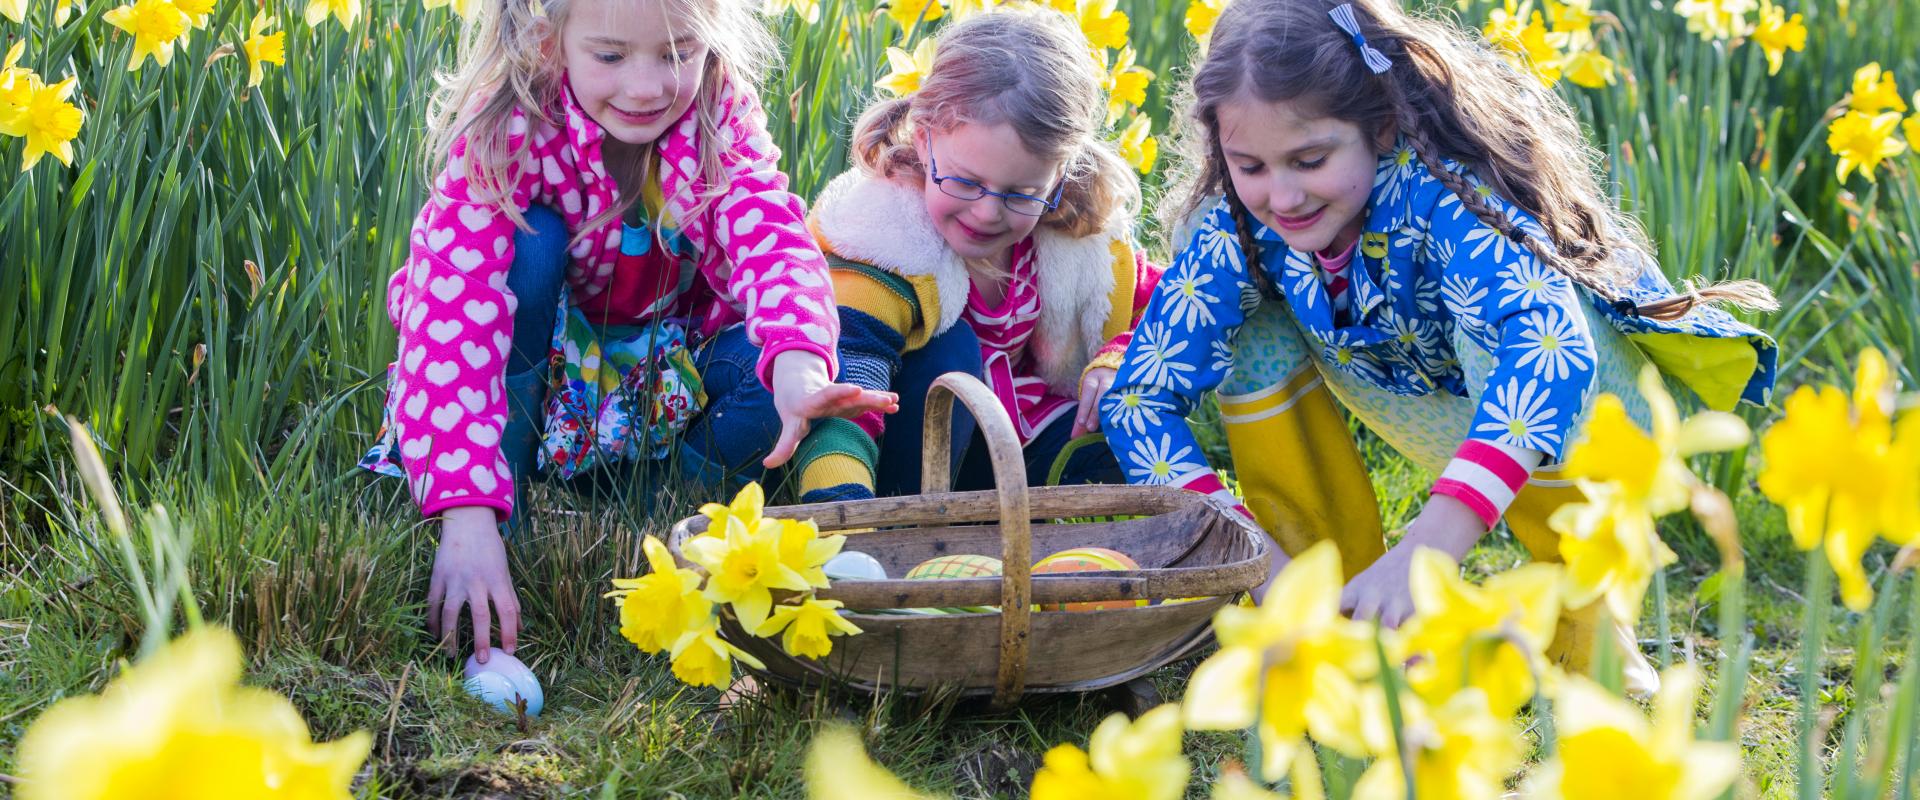 merched gyda basged o wyau Pasg ynghanol cennin Pedr / girls with basket of Easter eggs amid daffodils 